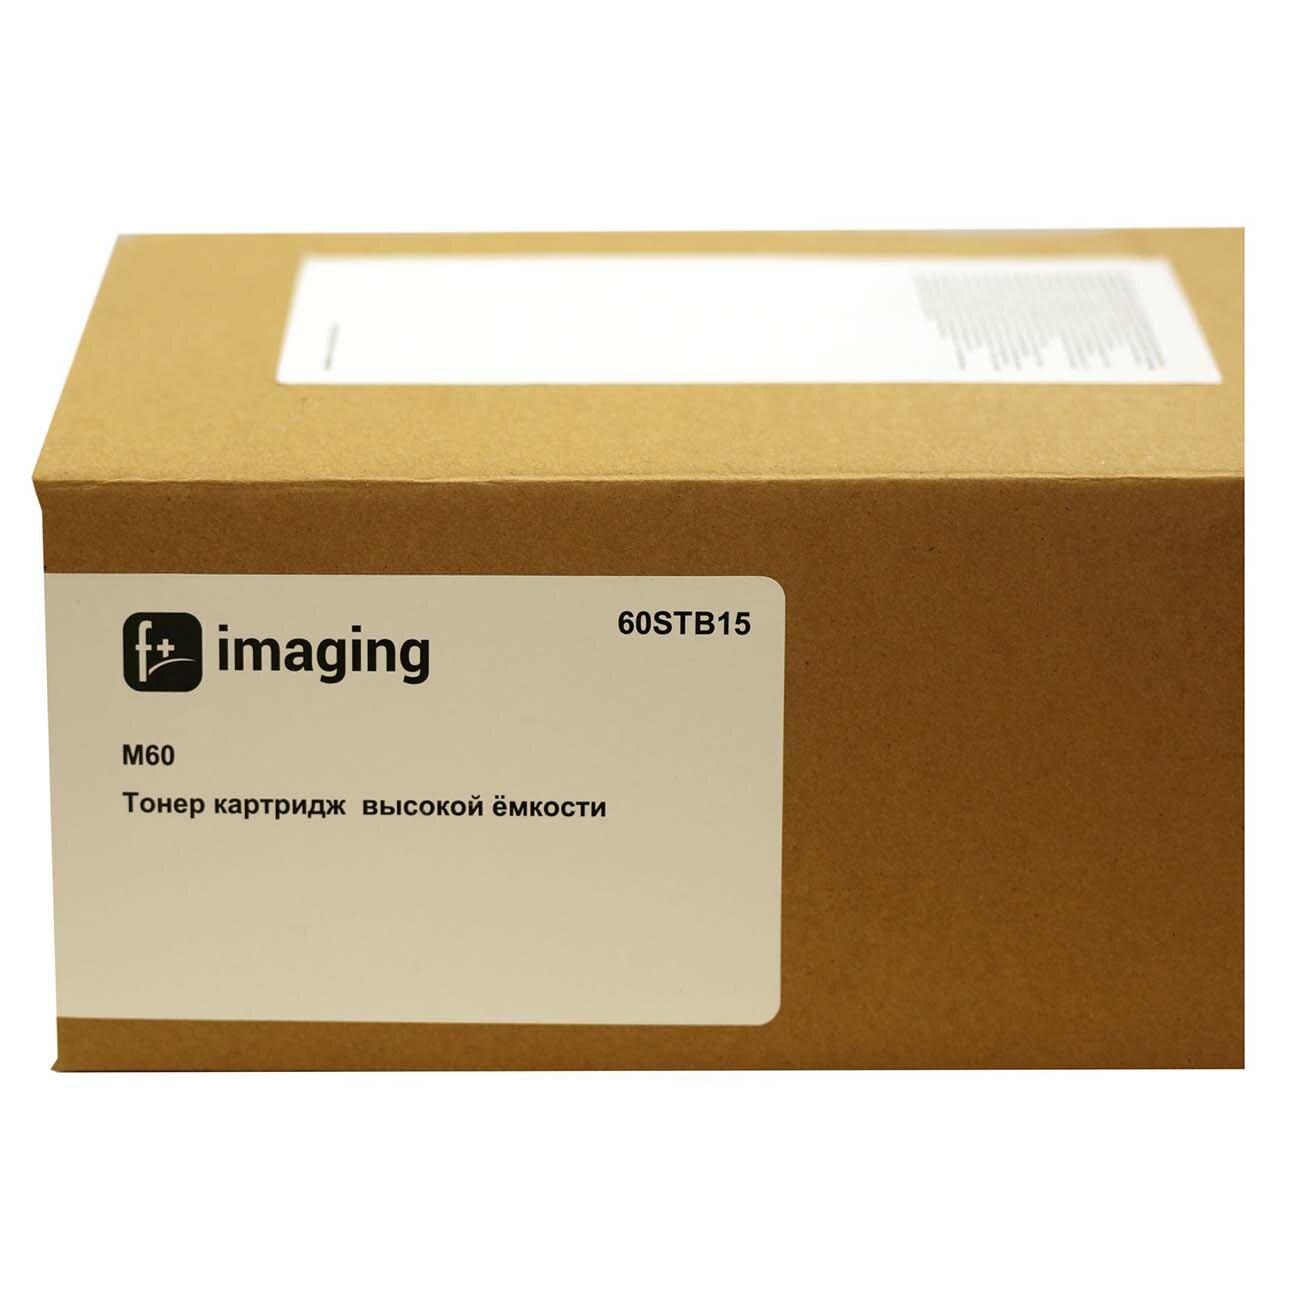 Картридж для лазерного принтера f+ imaging 60STB15